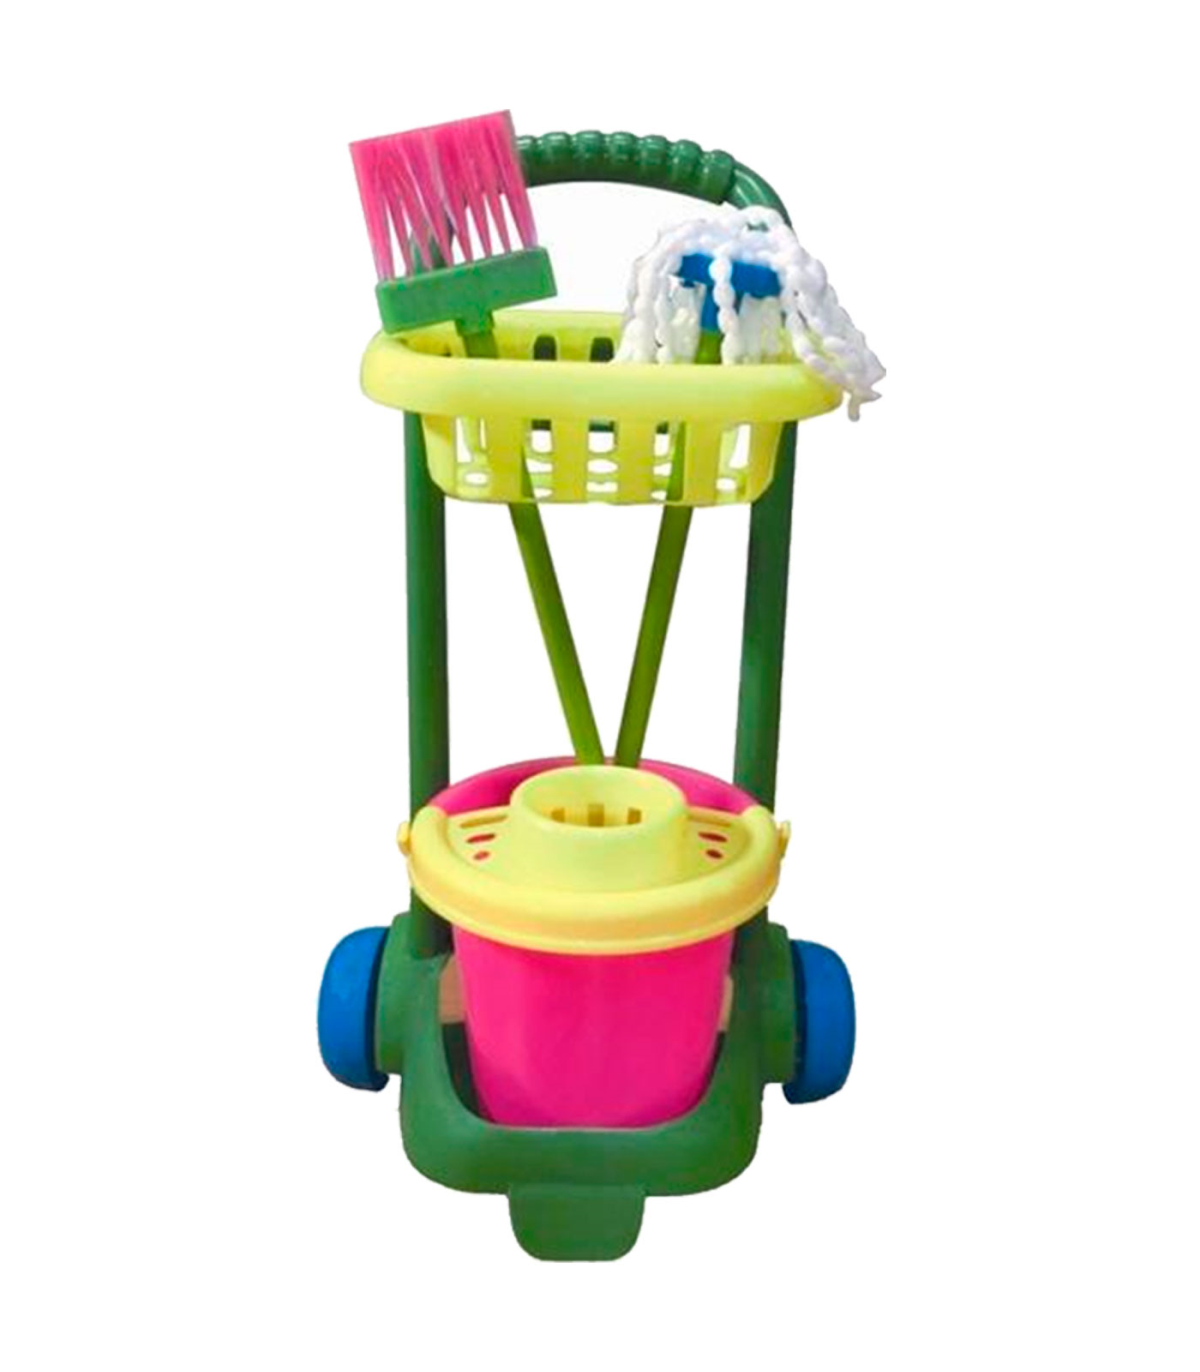 Tradineur - Carro de limpieza infantil de juguete con accesorios 57 x 31 x  20 cm, plástico resistente, cubo, fregona, escoba, ba